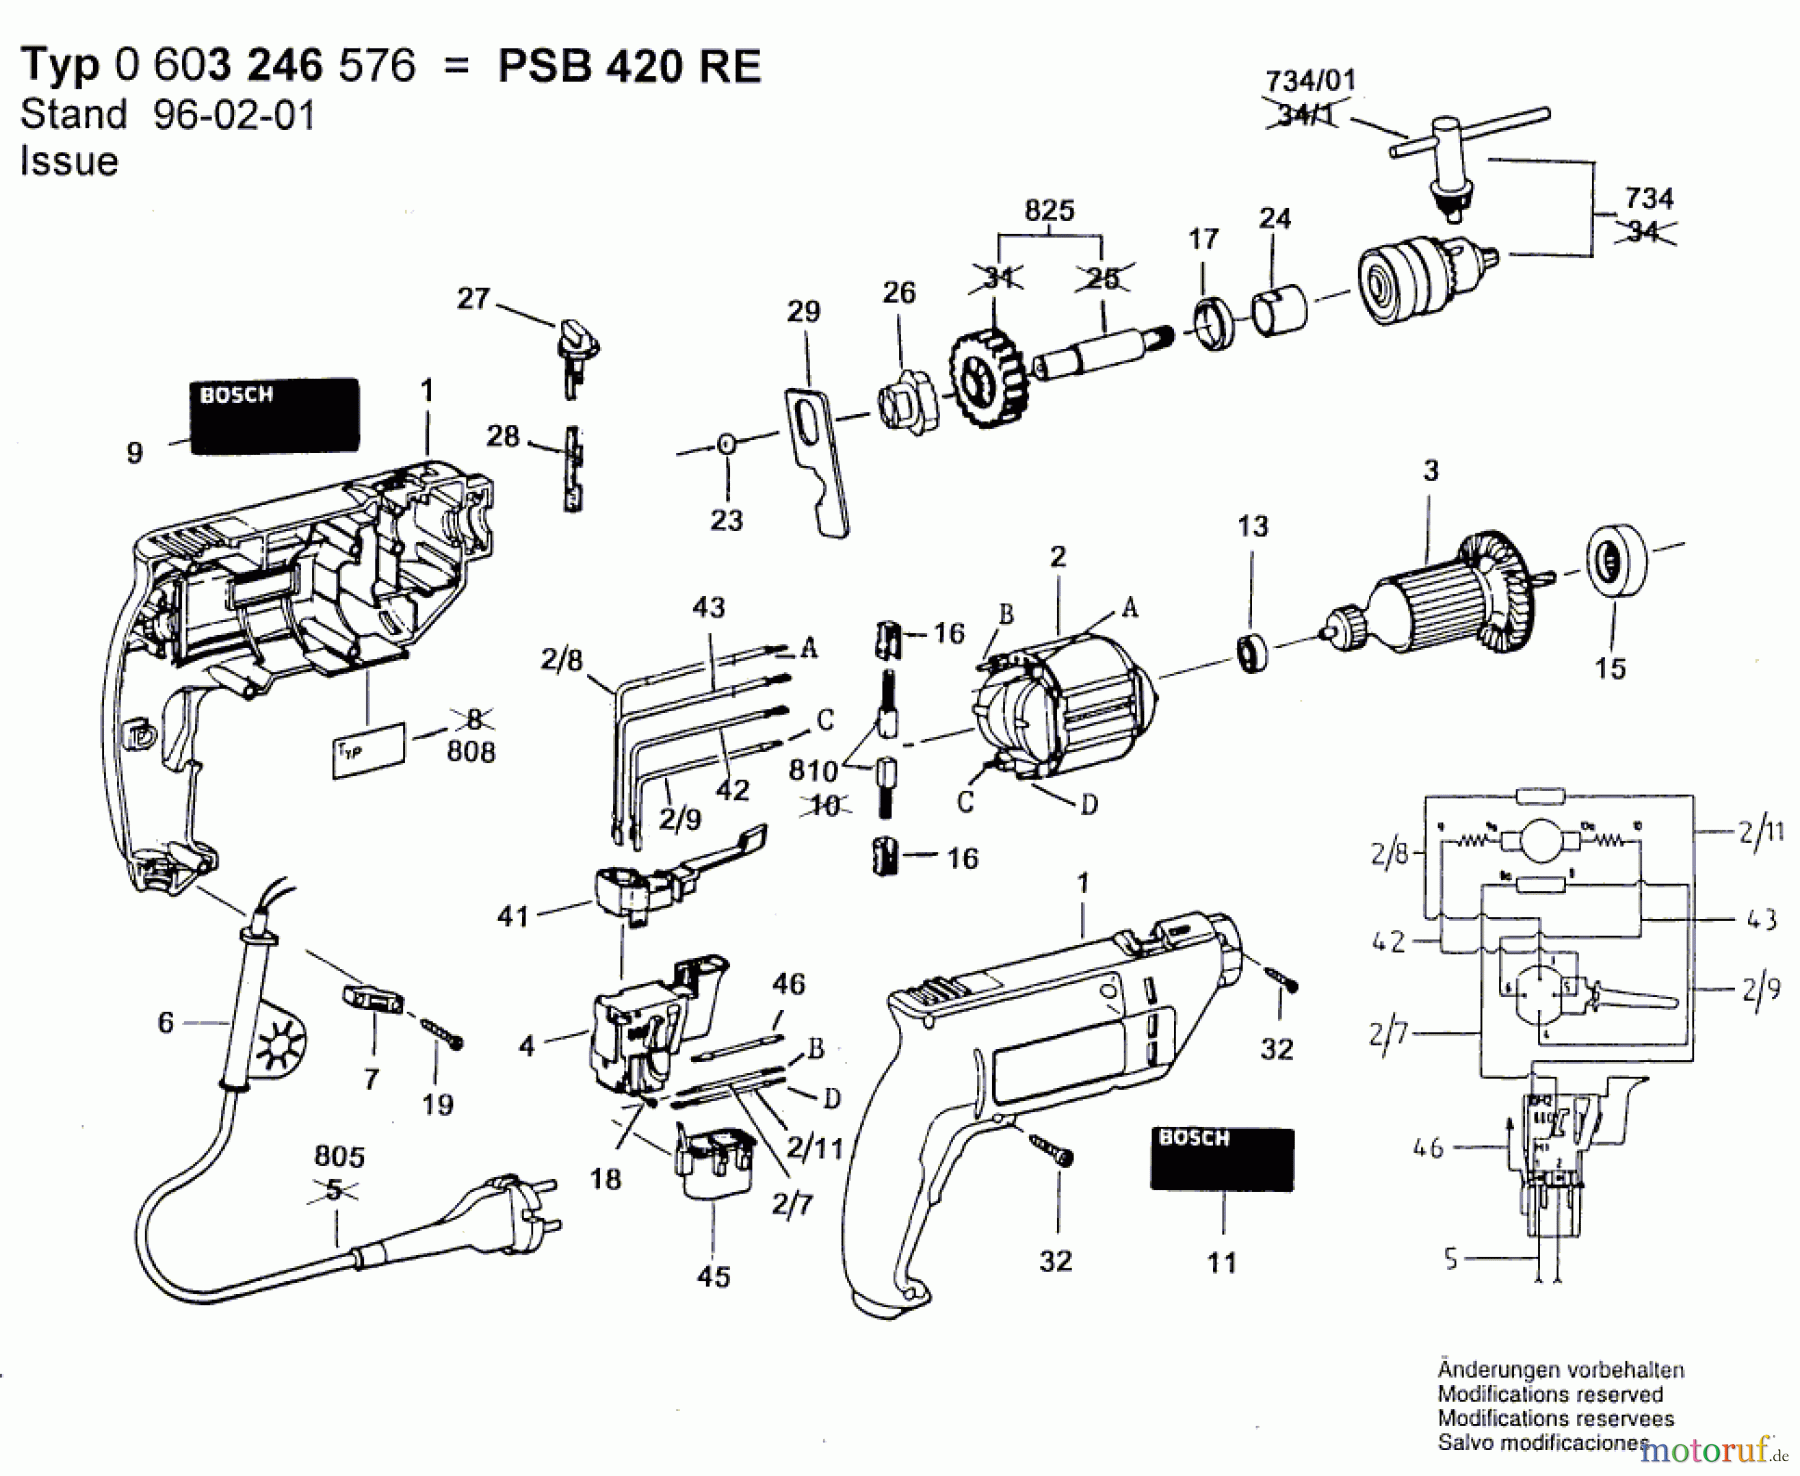  Bosch Werkzeug Schlagbohrmaschine PSB 420 RE Seite 1